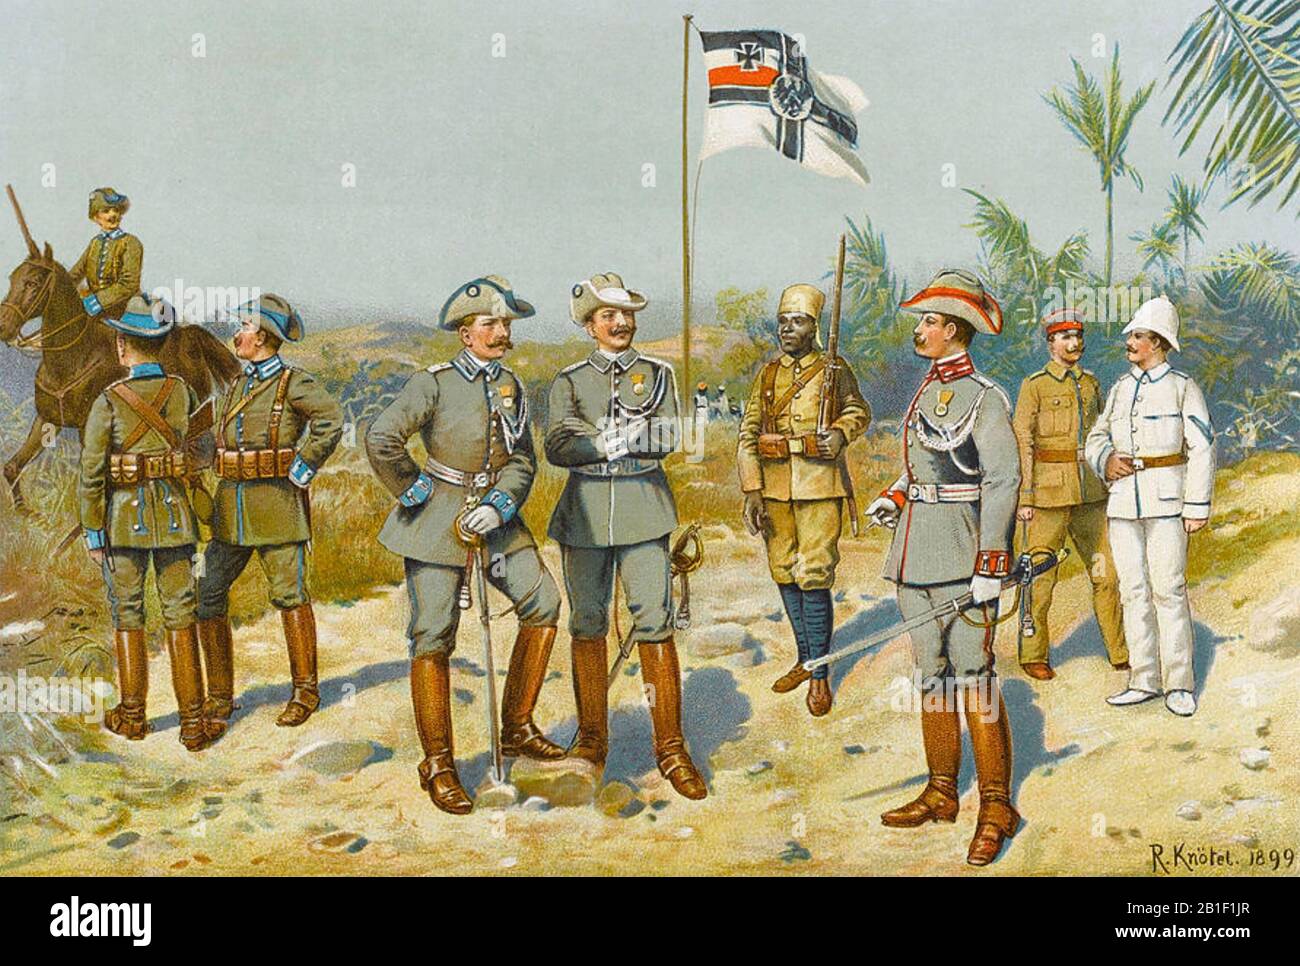 COLONIALISME allemand - officiers de diverses régions de l'Afrique australe contrôlée par l'Allemagne dans un imprimé de 1899. Banque D'Images